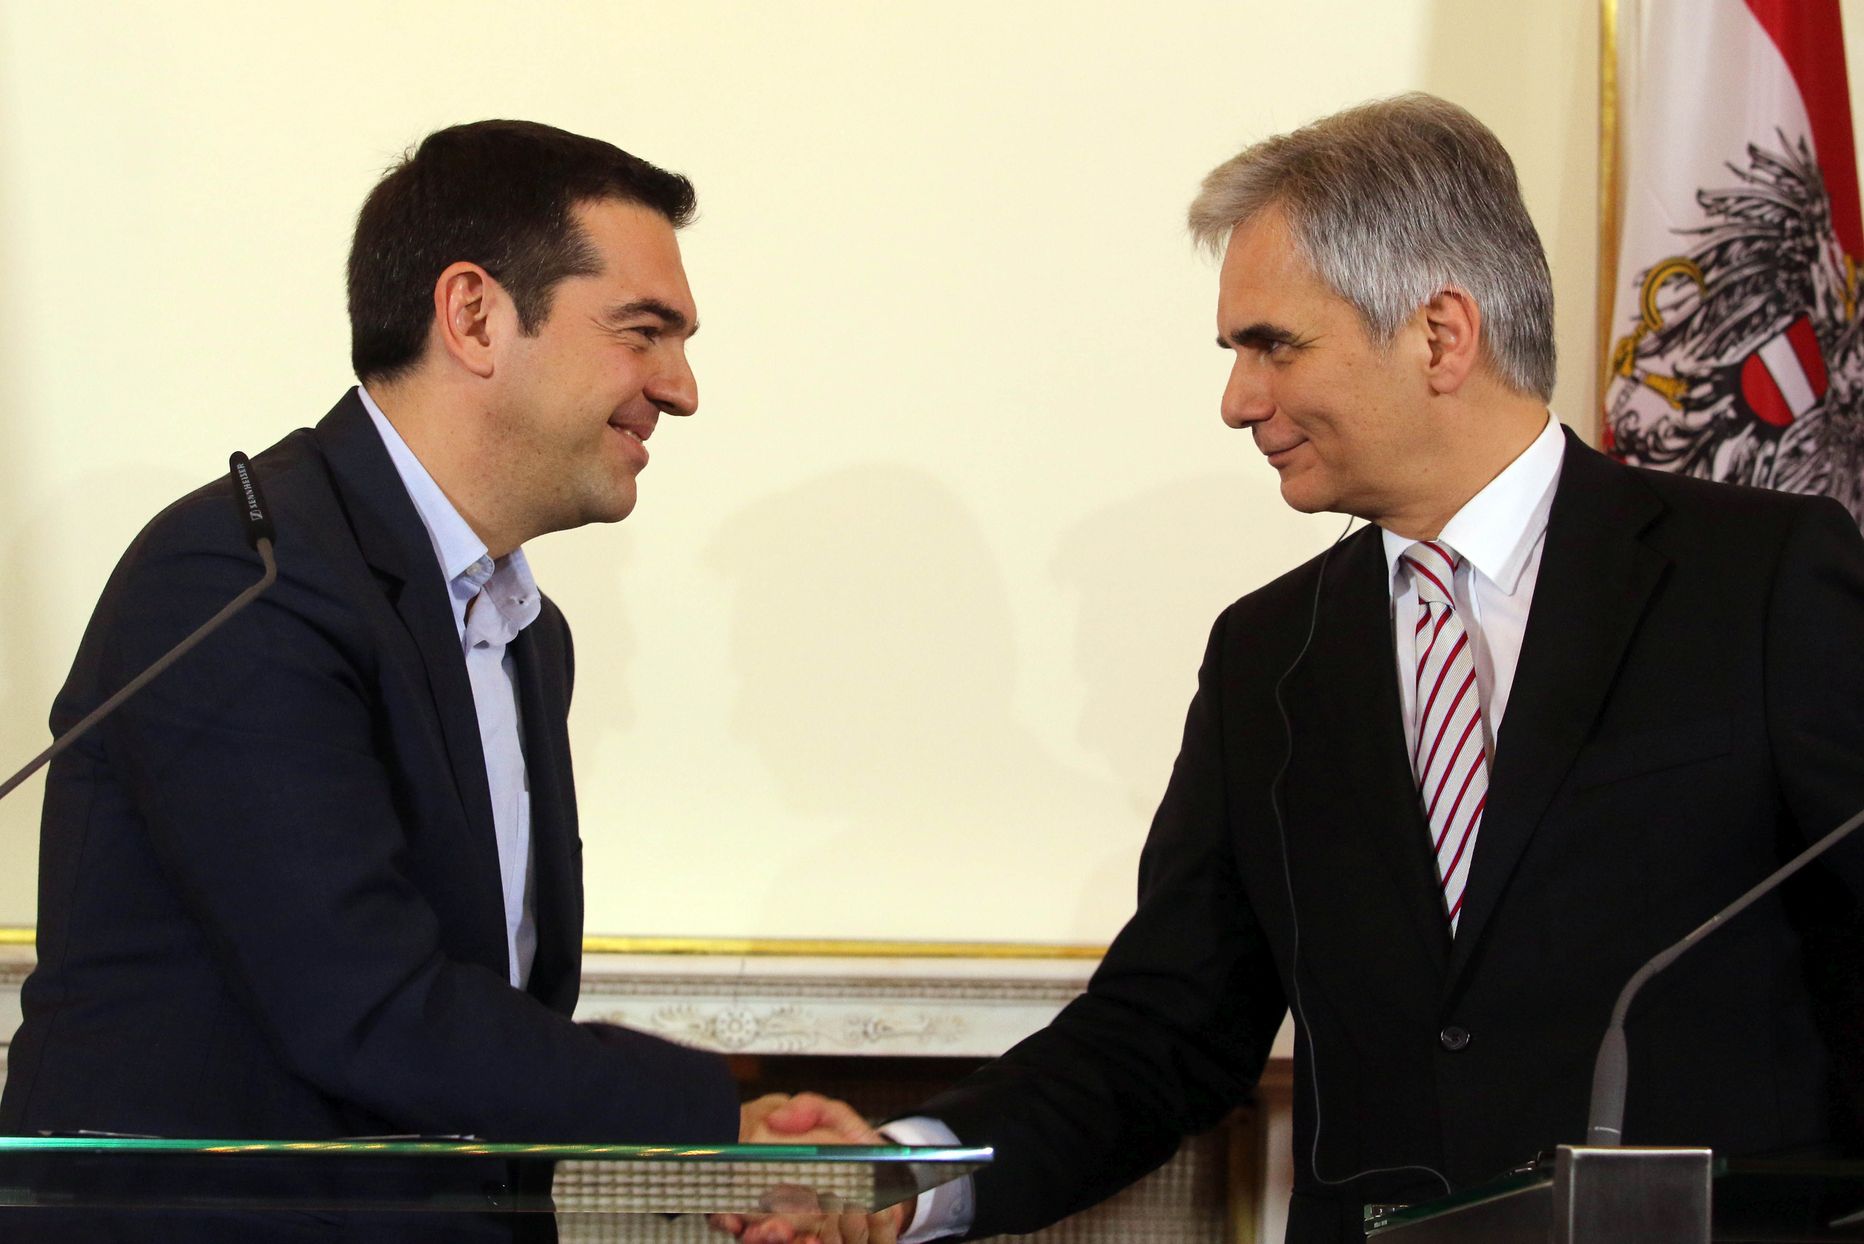 Kreeka peaminister Alexis Tsipras (vasakul) oli eile optimistlik ja ütles Viinis kohtudes Austria kantsleri Werner Faymanniga, et ta ei näe põhjust, miks Euroopa Liit ei võiks Kreeka abiprogrammi suhtes kokkuleppele jõuda.